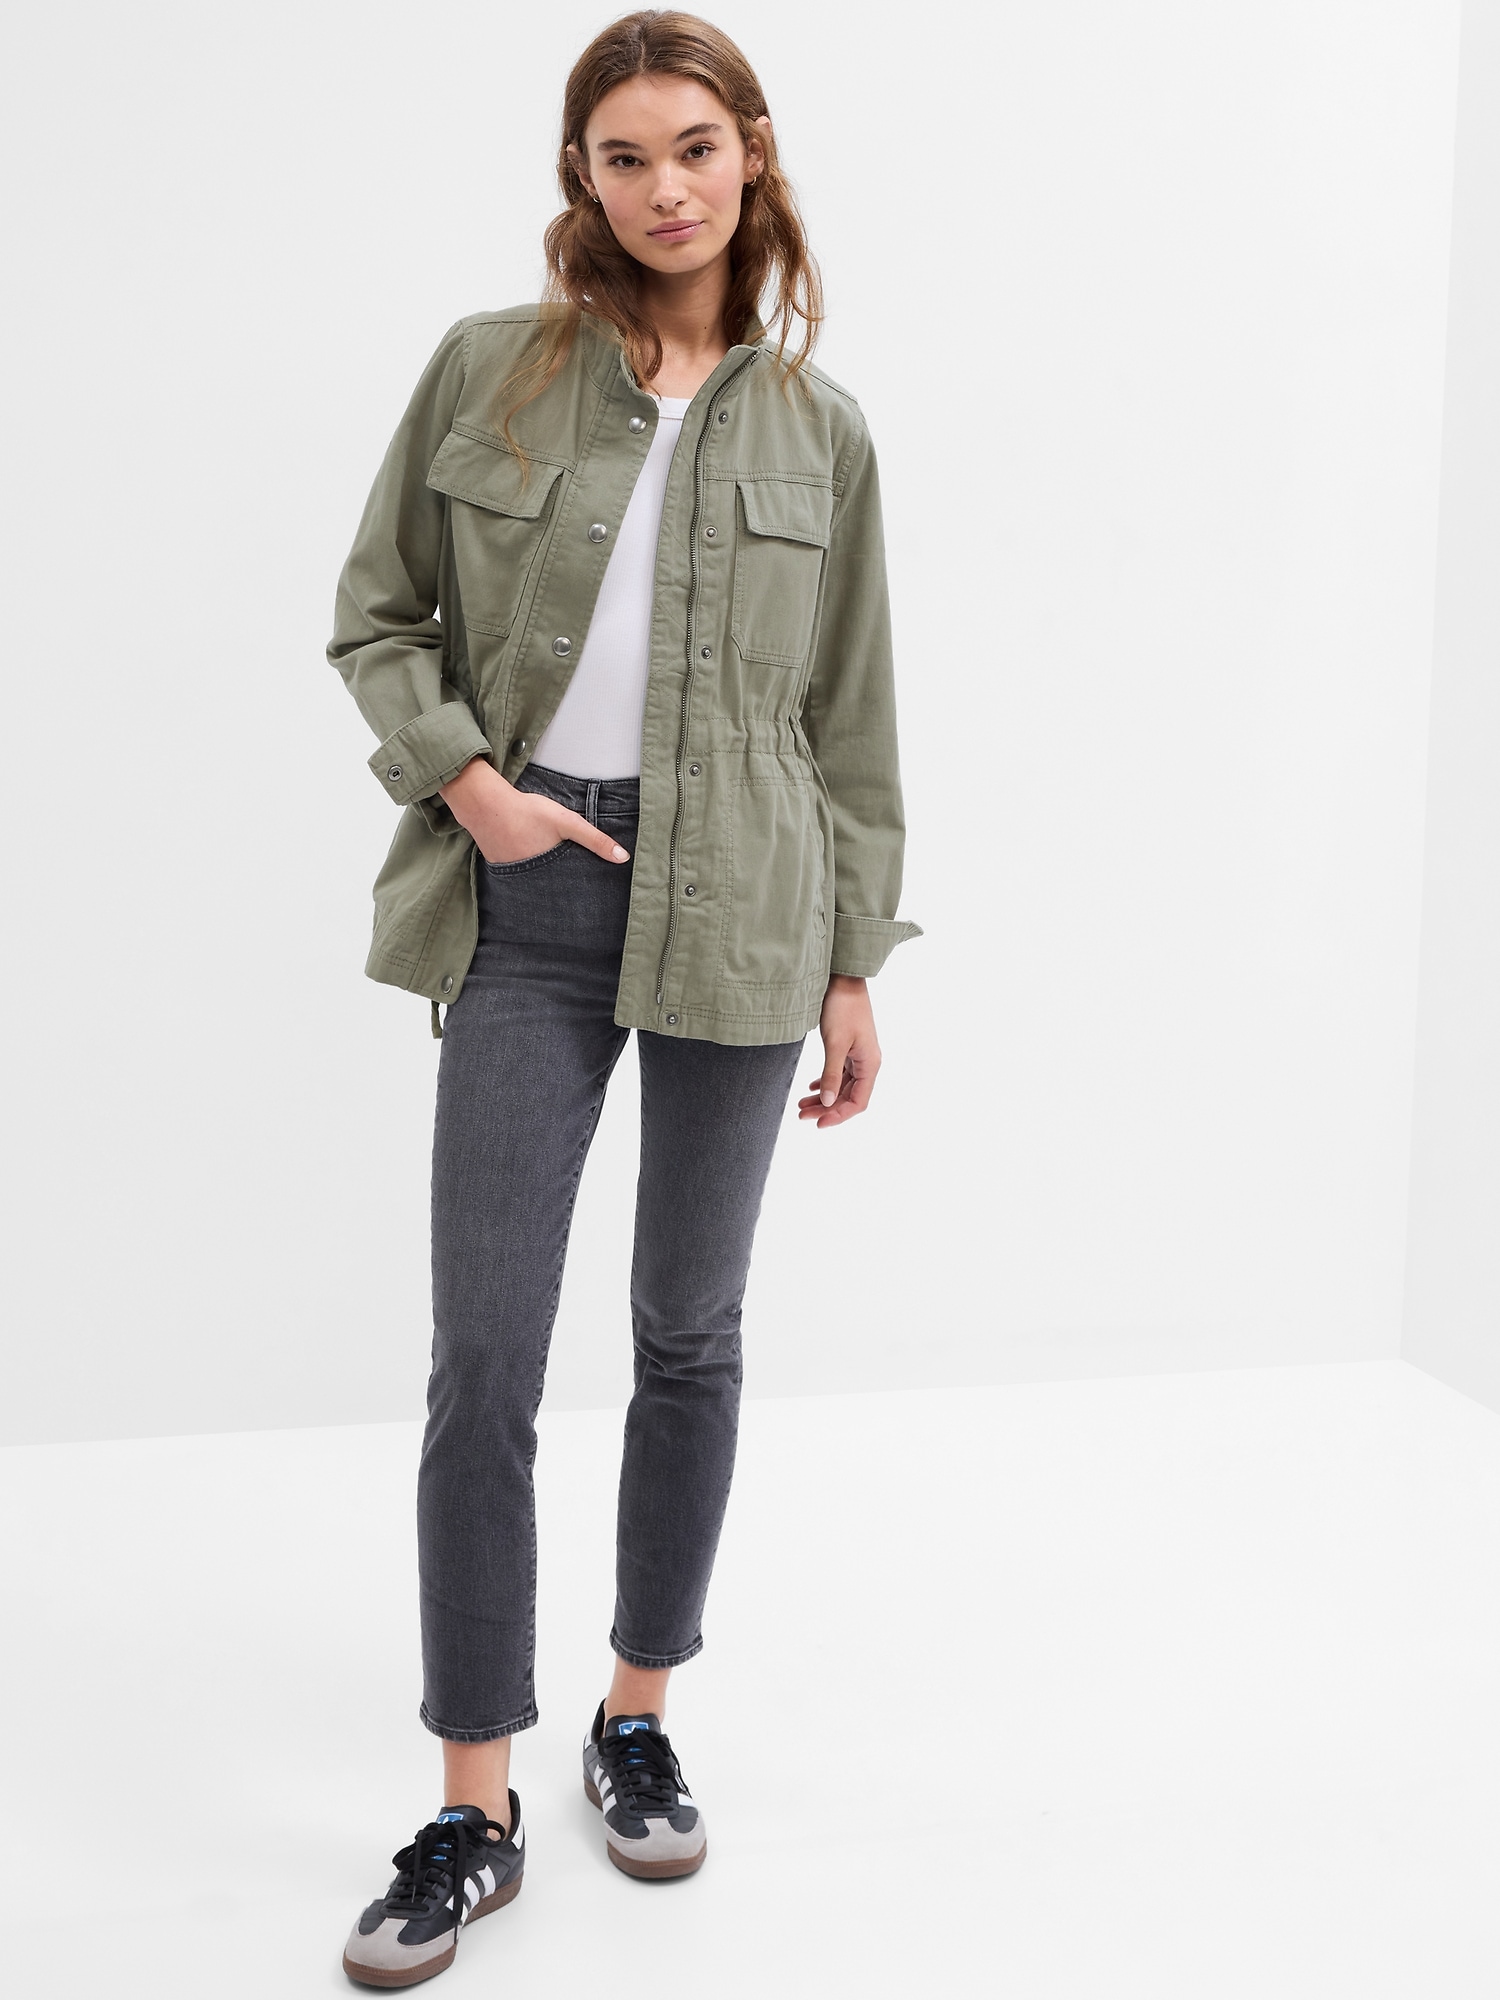 Gap Women's Camo Utility Jacket Small, Green Casual Cargo 100% Cotton